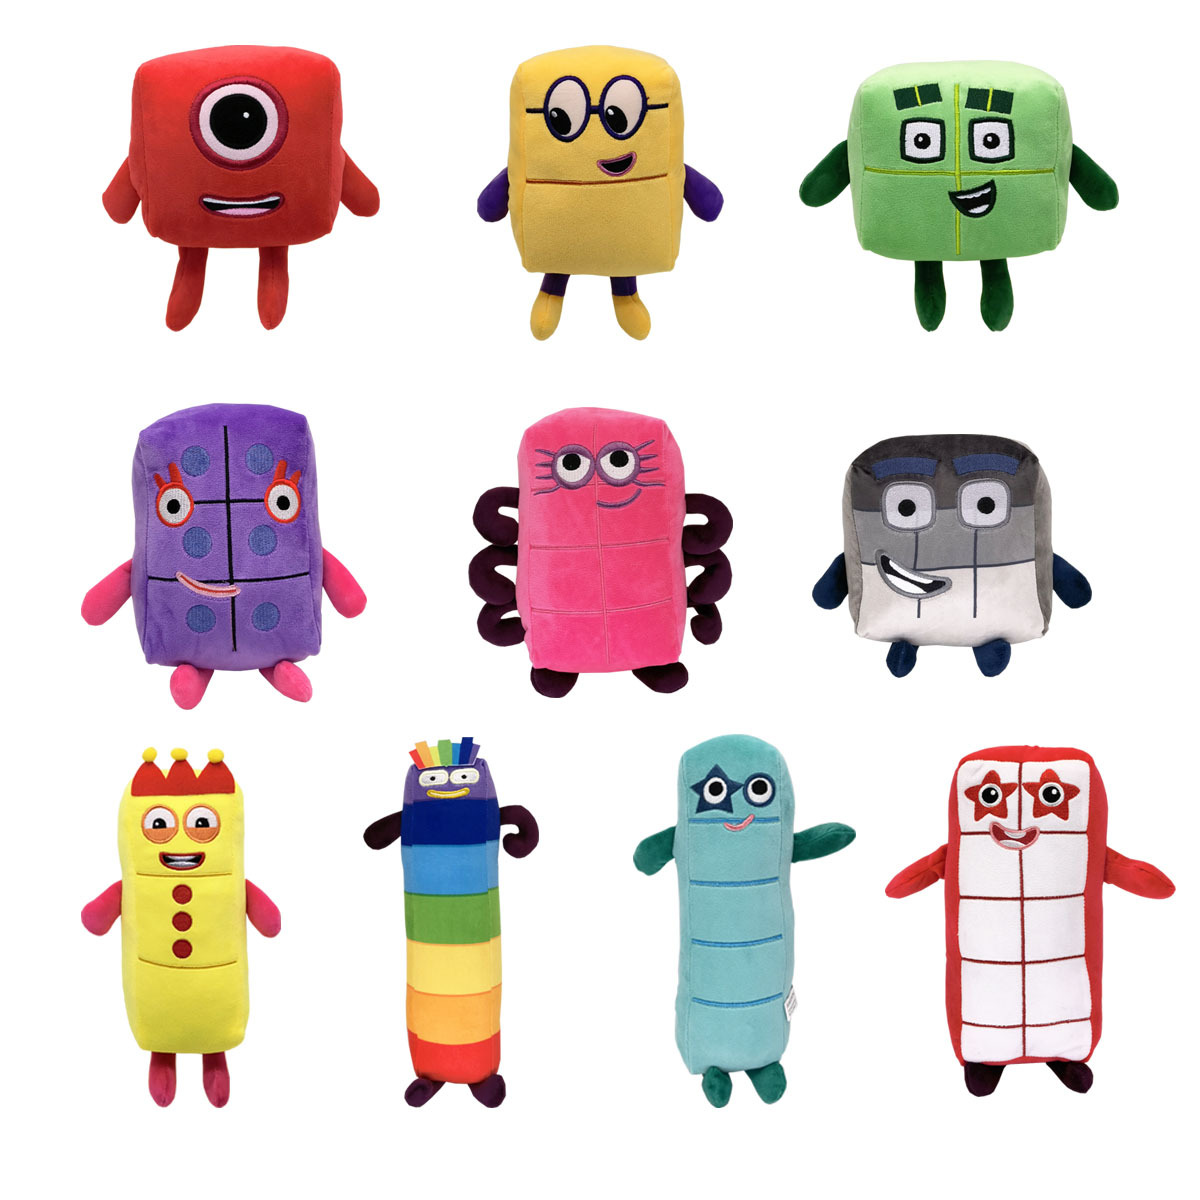 Cartoon NumberBlocks Plush Doll Toy Educational Number Blocks